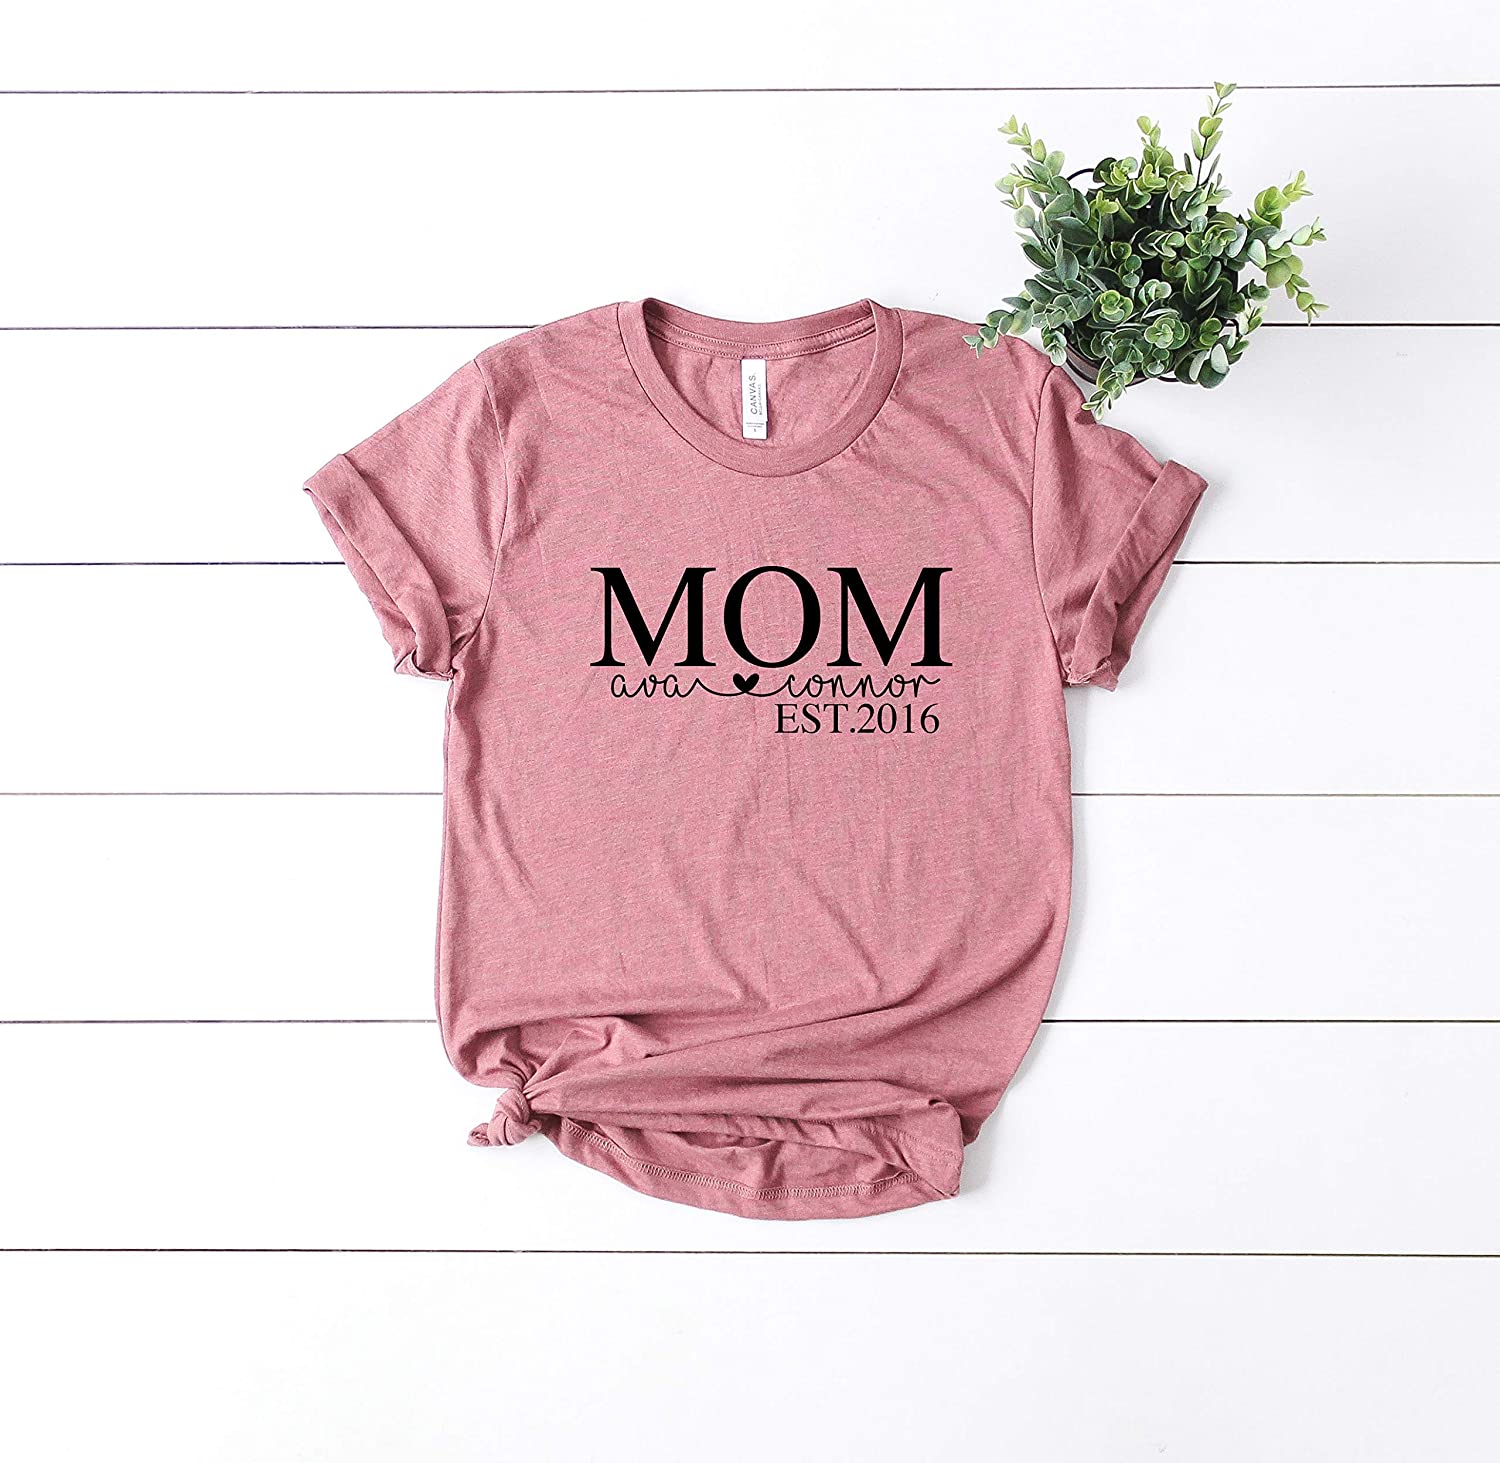 Thiết kế áo T-shirt cho ngày Mother’s Day với năm và tên của các con có thể thay đổi